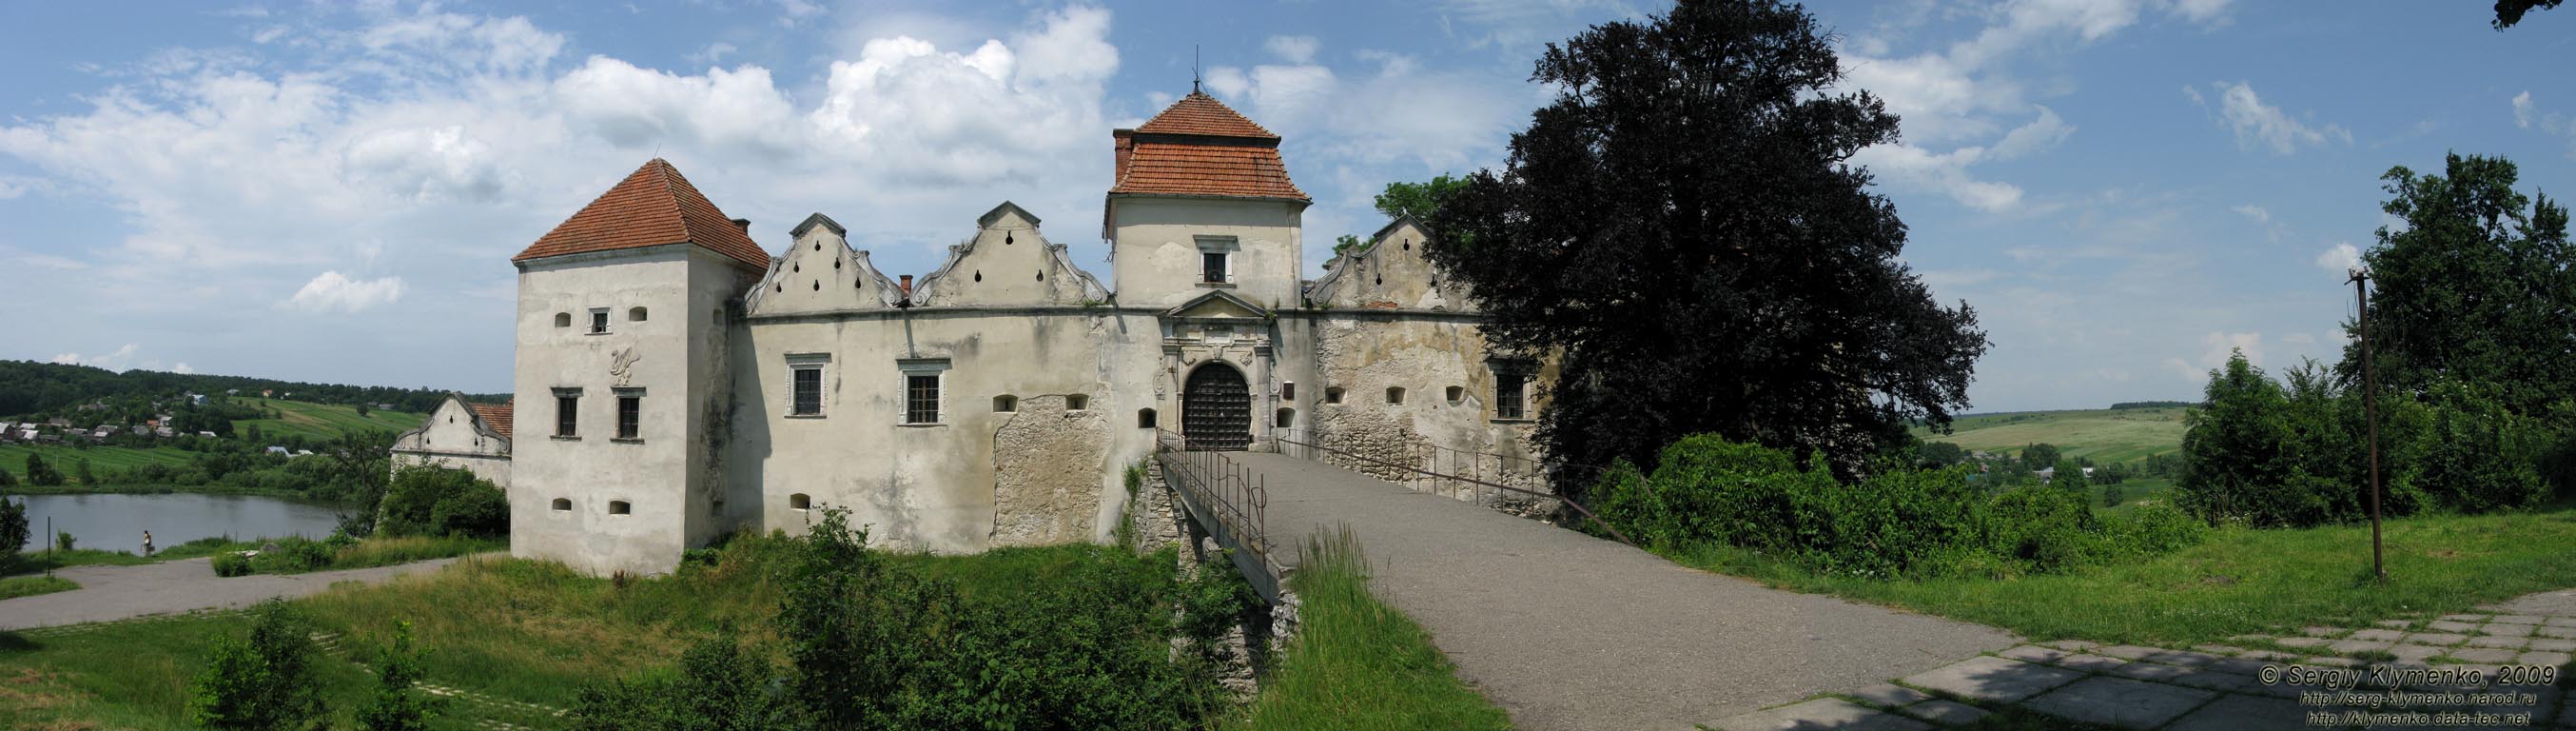 Львовская область. Свирж. Фото. Свиржский замок, XV век (вид с юга).